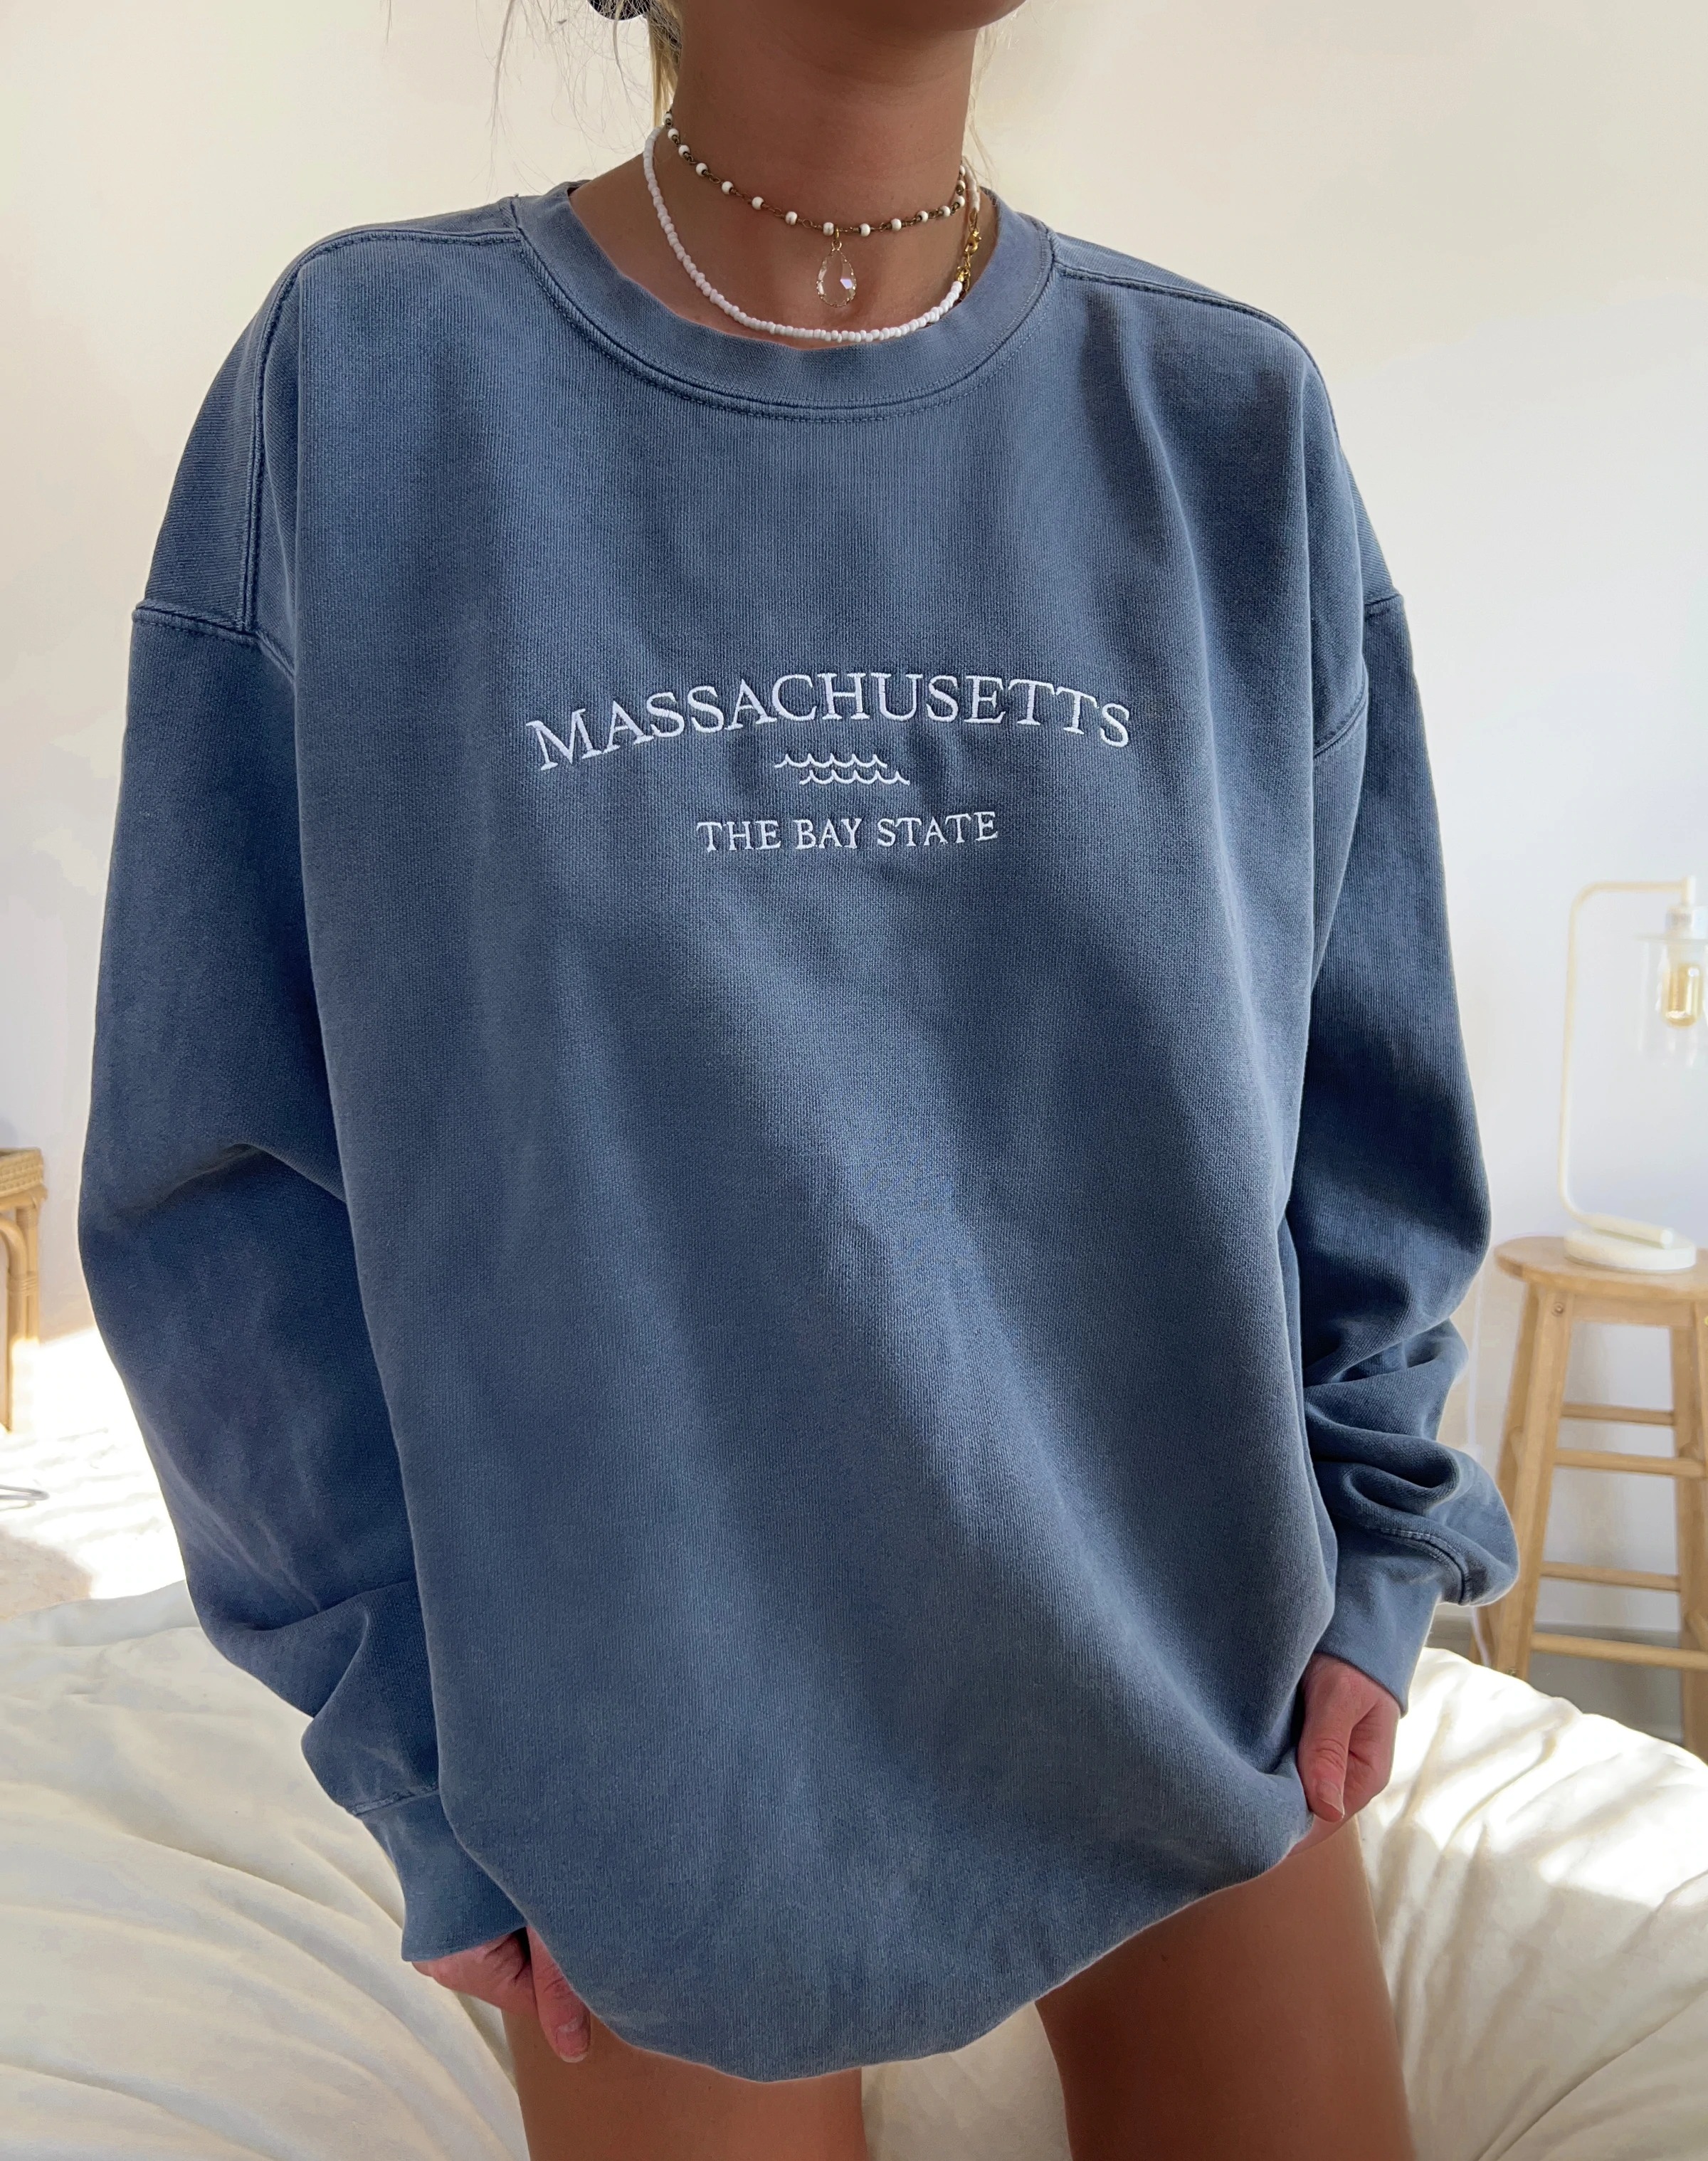 Embroider Massachusetts Sweatshirt Women's Chic Hoodie